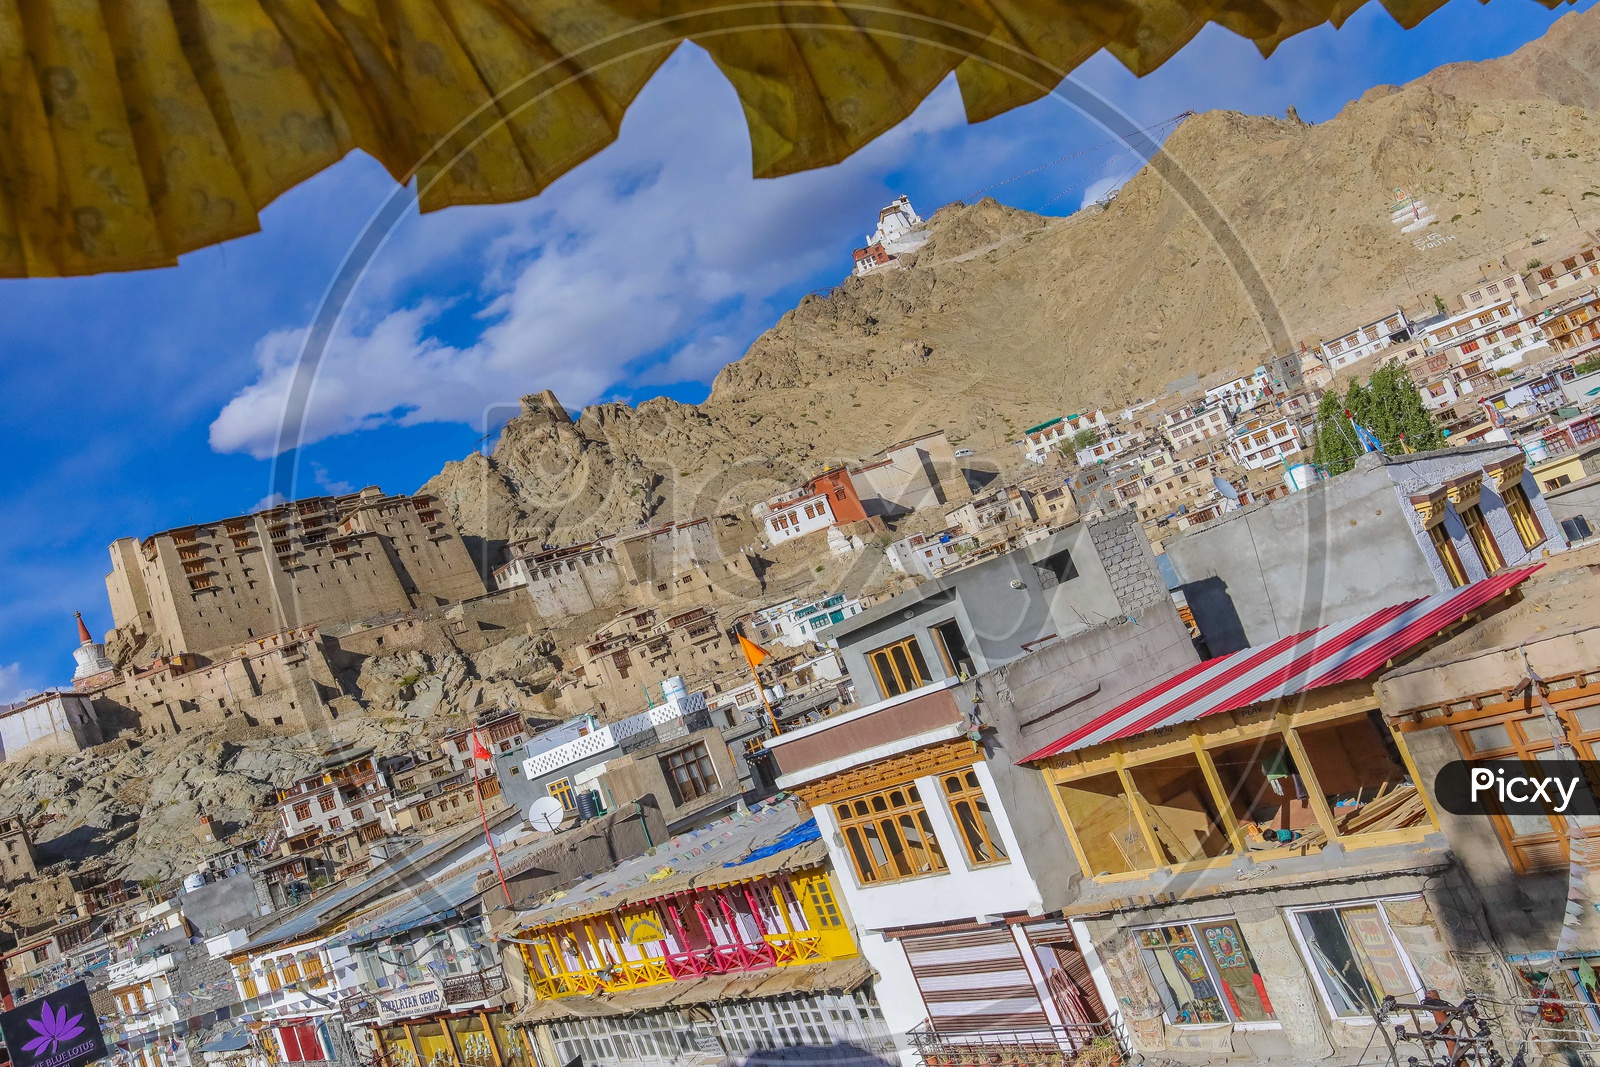 Monasteries and Houses in leh Ladakh region